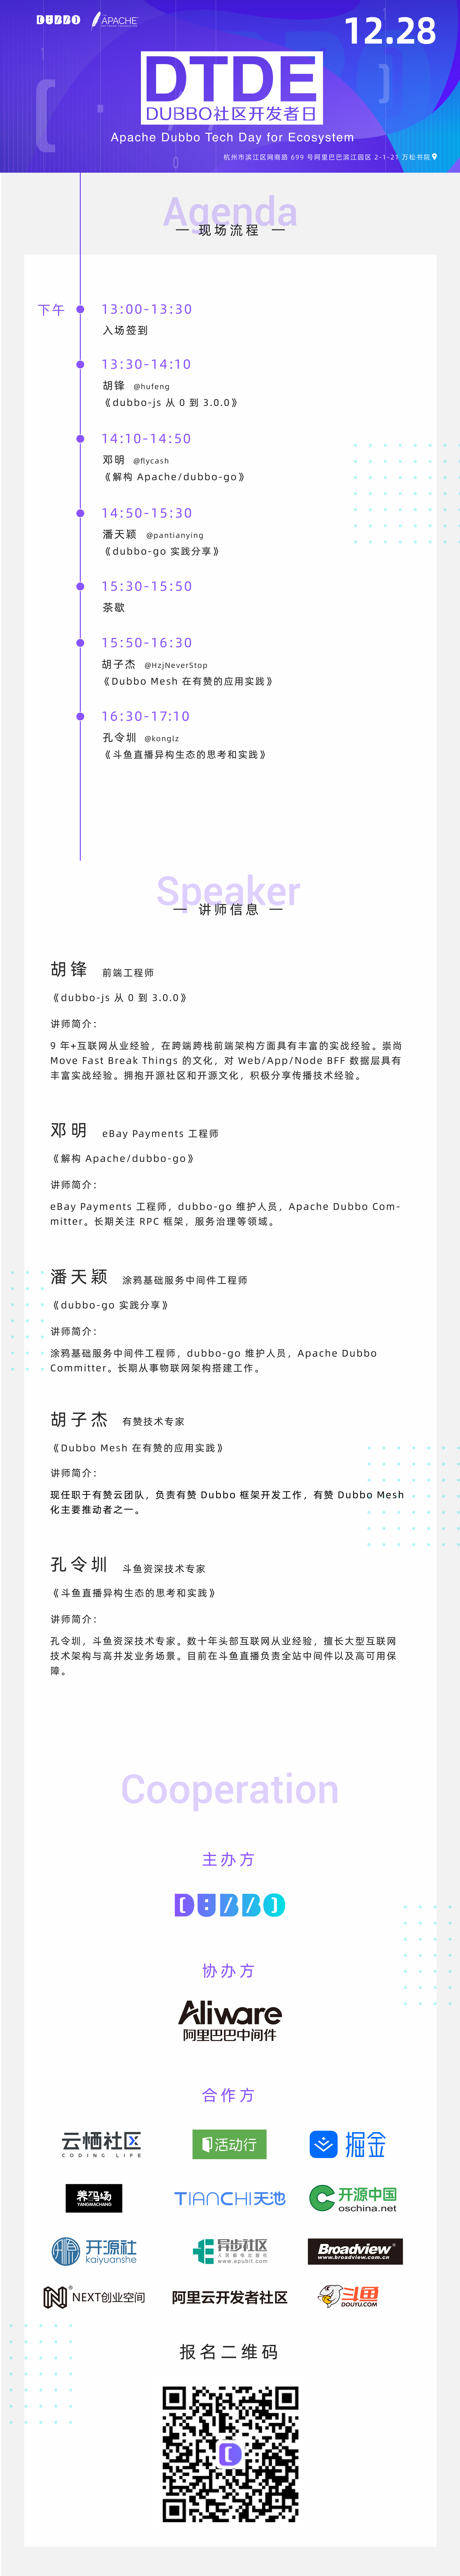 【Dubbo 开发者日杭州站】这可能是微服务开发者们最关注的技术盛宴